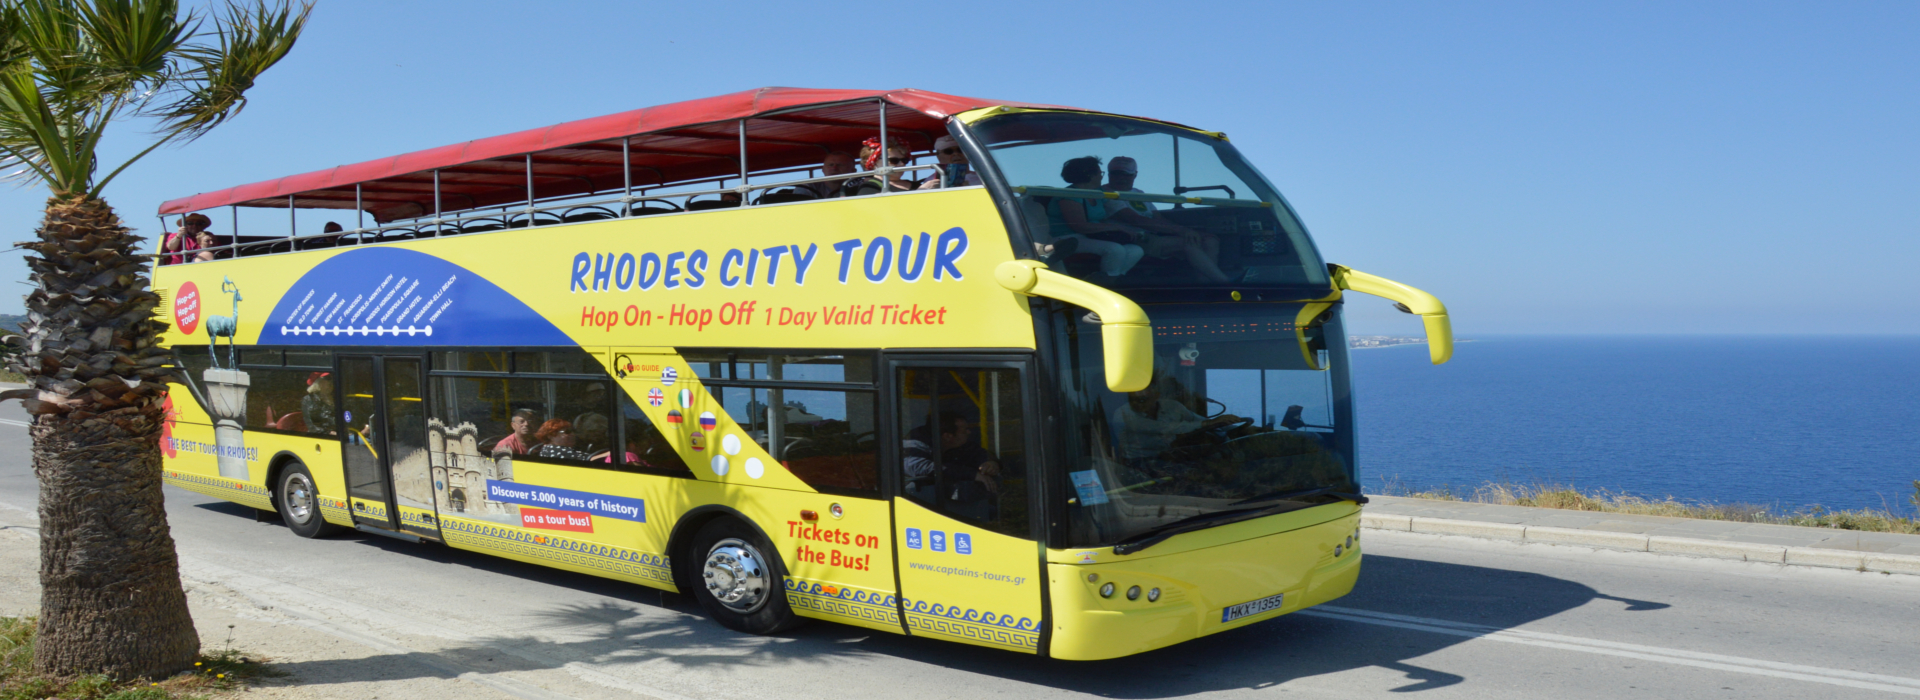 Visite de la ville de Rhodes avec bus ouvert | Captains Tours